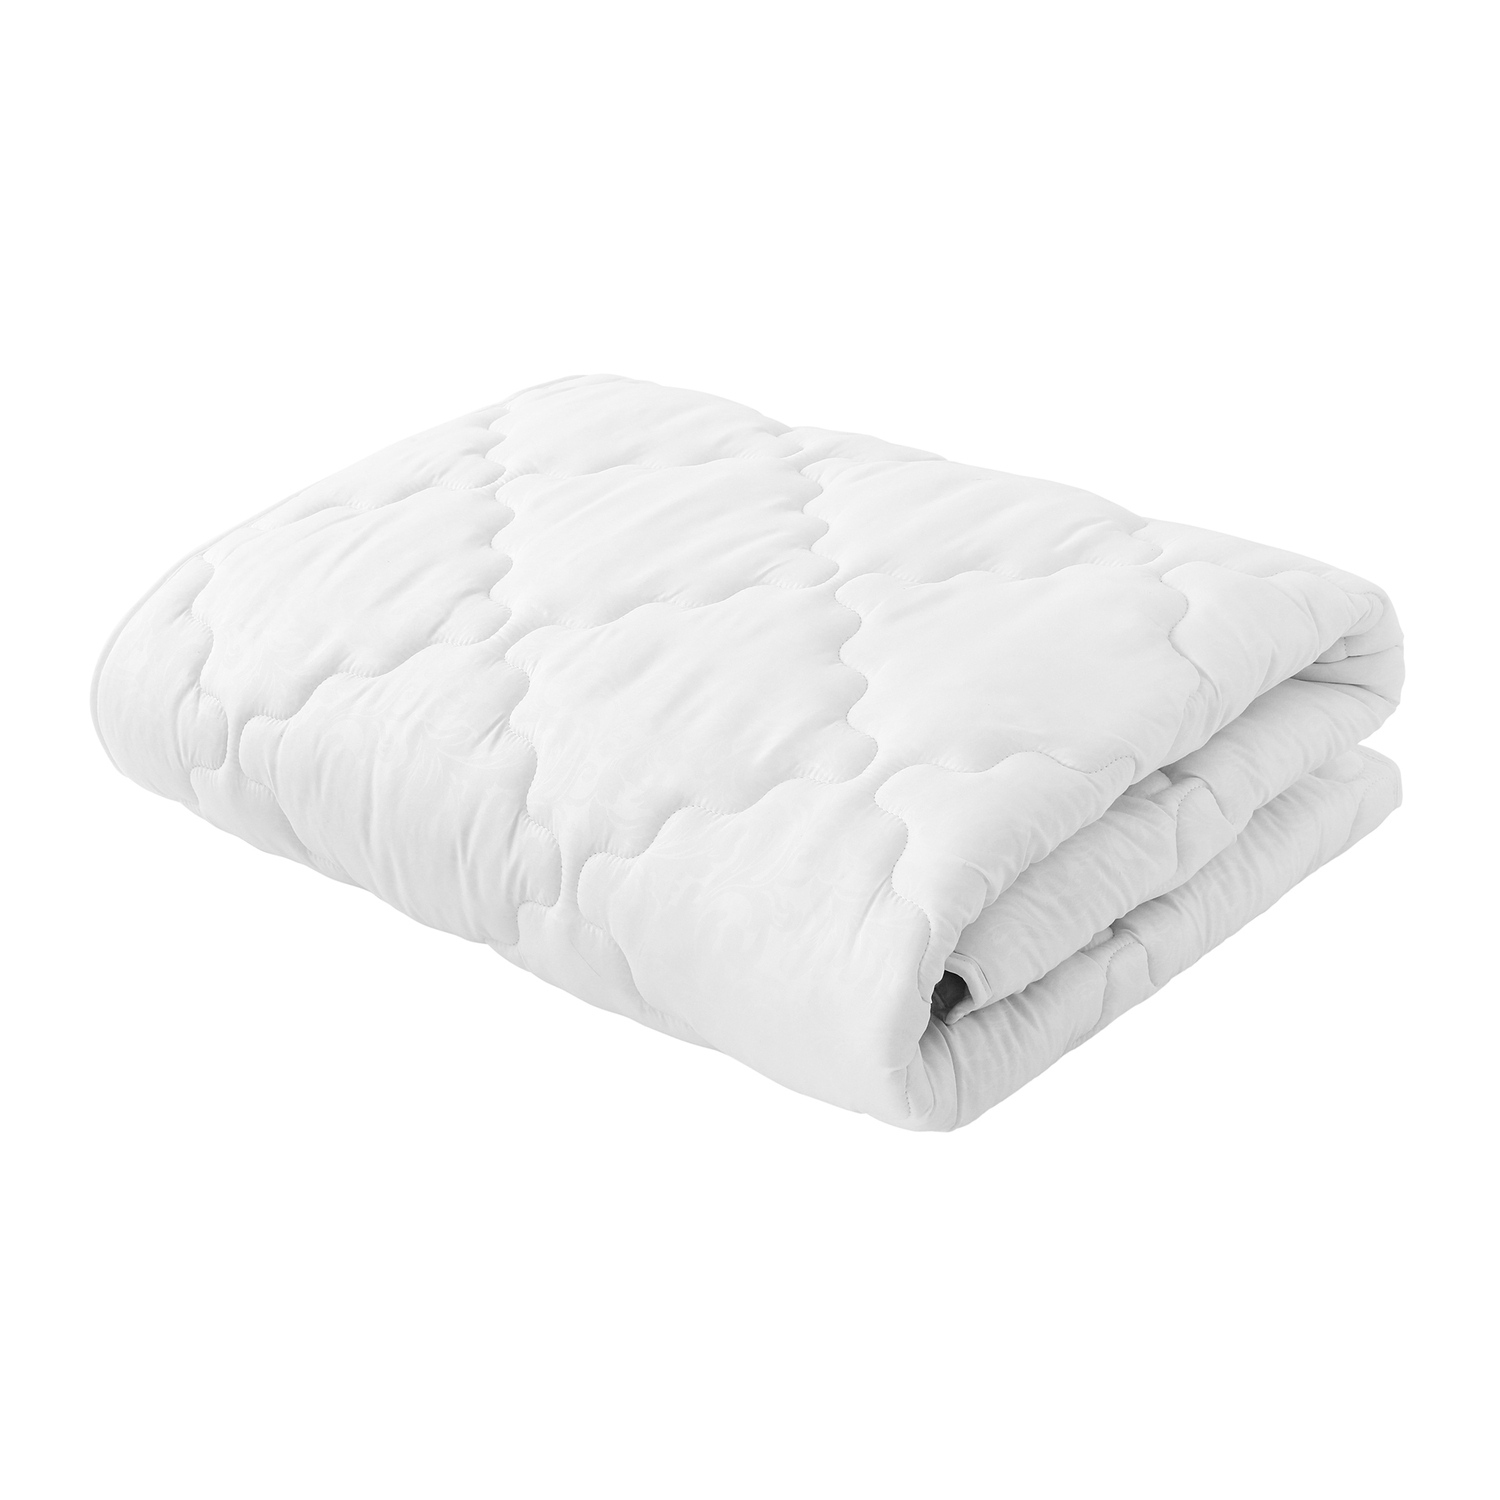 Одеяло Белая ветка (200х220 см), размер 200х220 см samo836833 Одеяло Белая ветка (200х220 см) - фото 1